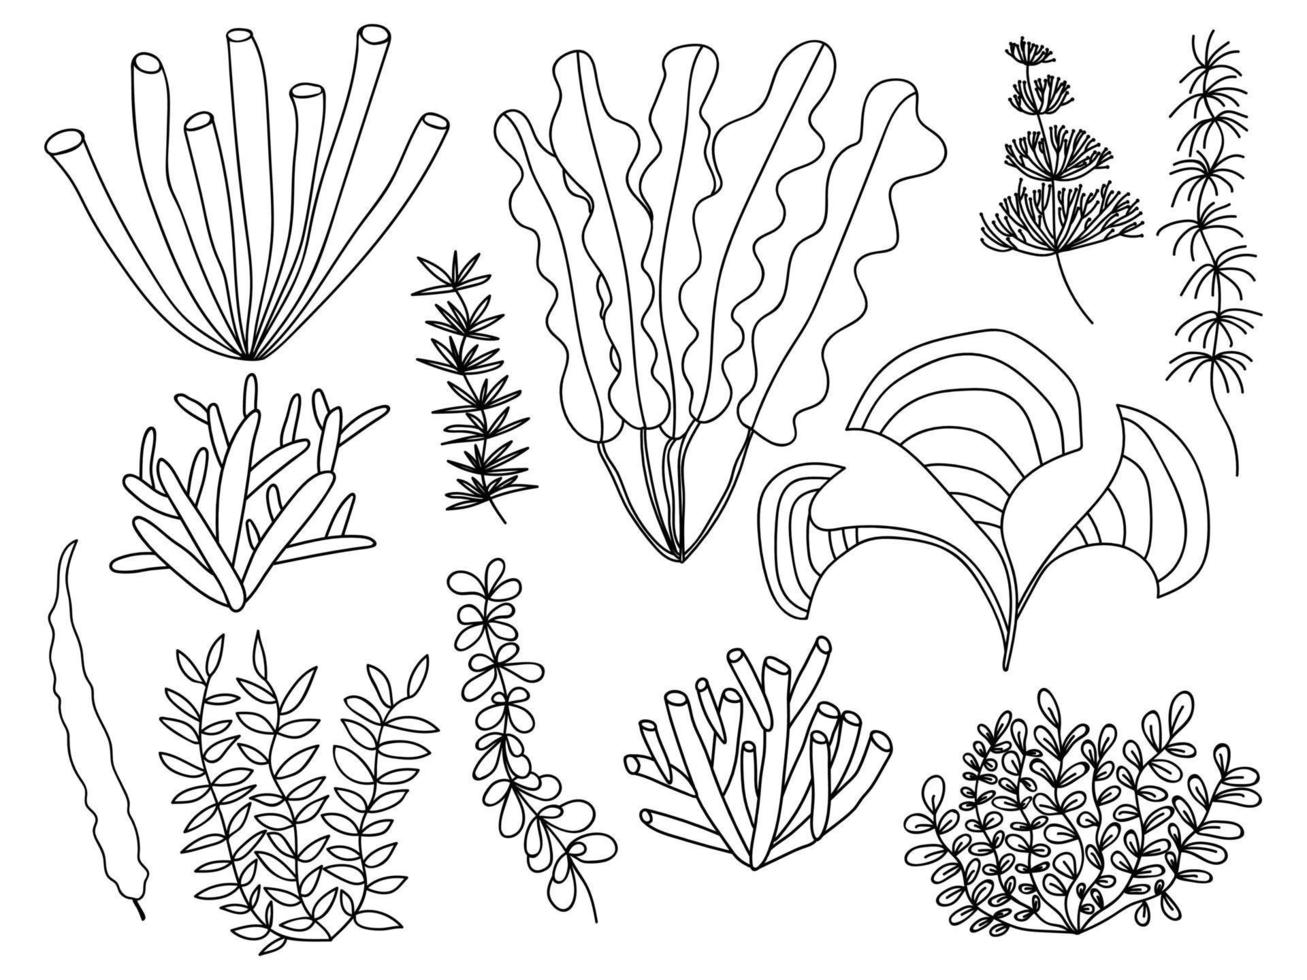 conjunto de vectores de algas marinas. conjunto de diferentes tipos de algas y plantas marinas. ilustración de hierba marina de garabato dibujada a mano.